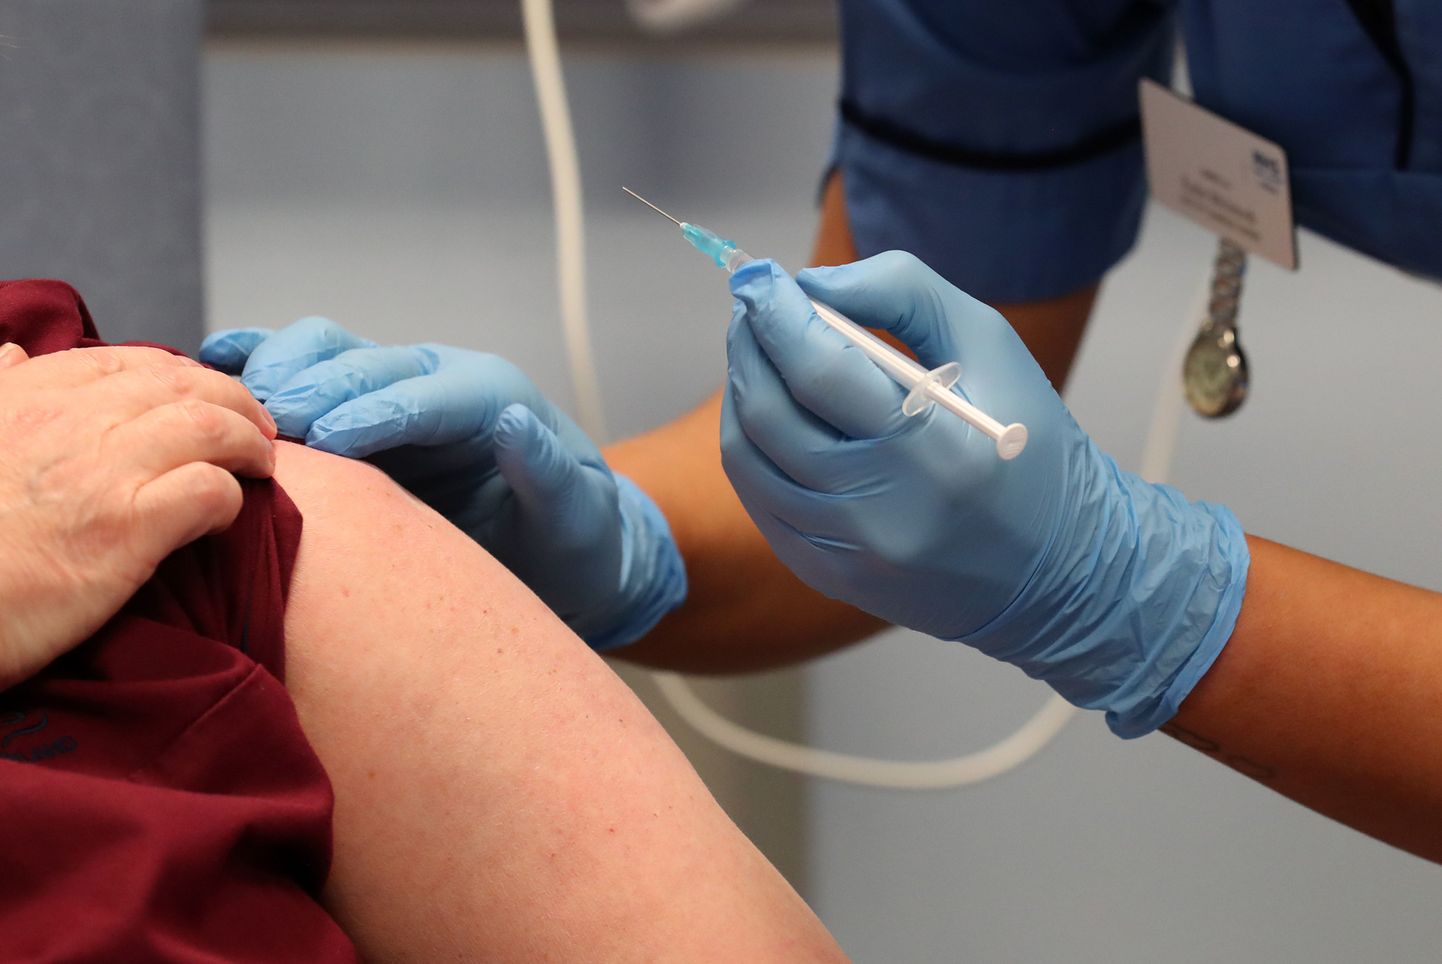 Mediķis skotijā saņem Pfizer/BioNTech izstrādāto Covid-19 vakcīnu. Ilustratīvs attēls